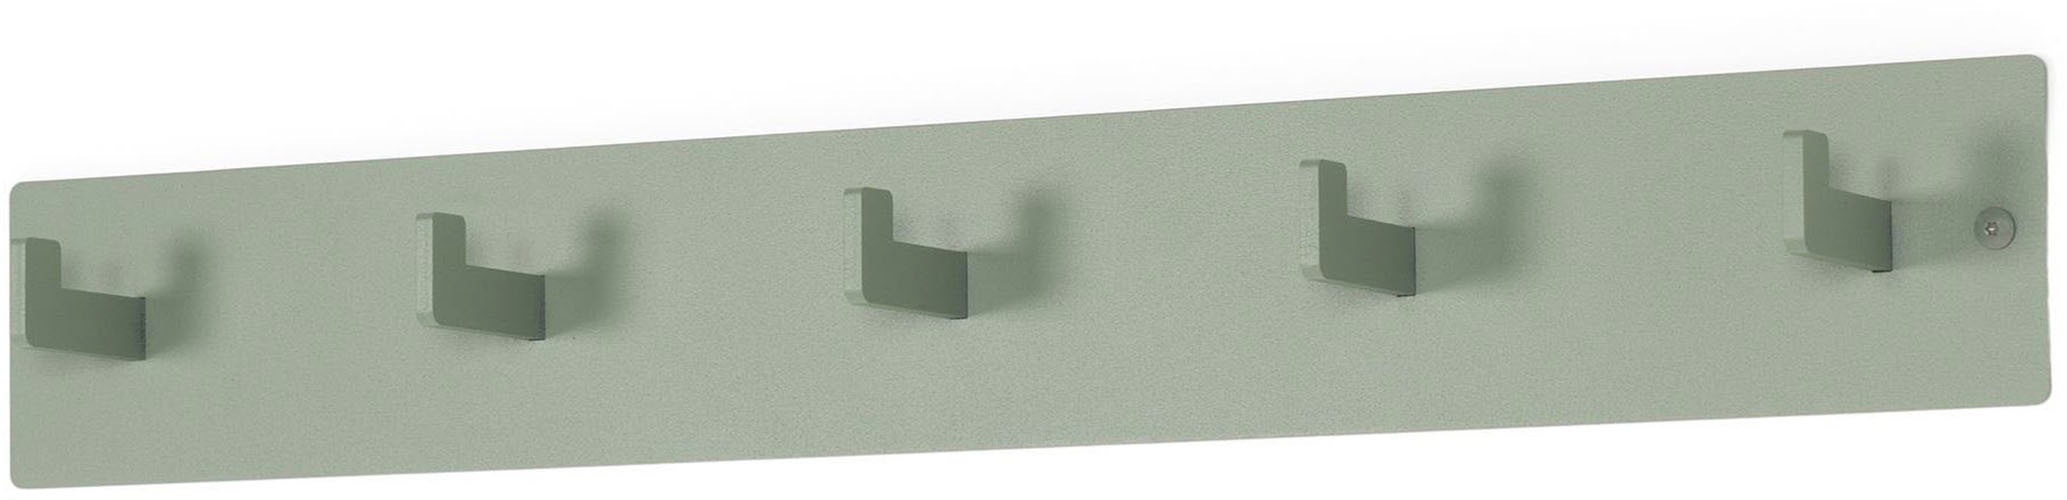 Spinder Design Garderobenhaken, Metall, Zeitloses Design, 5 Haken, Breite 70 cm